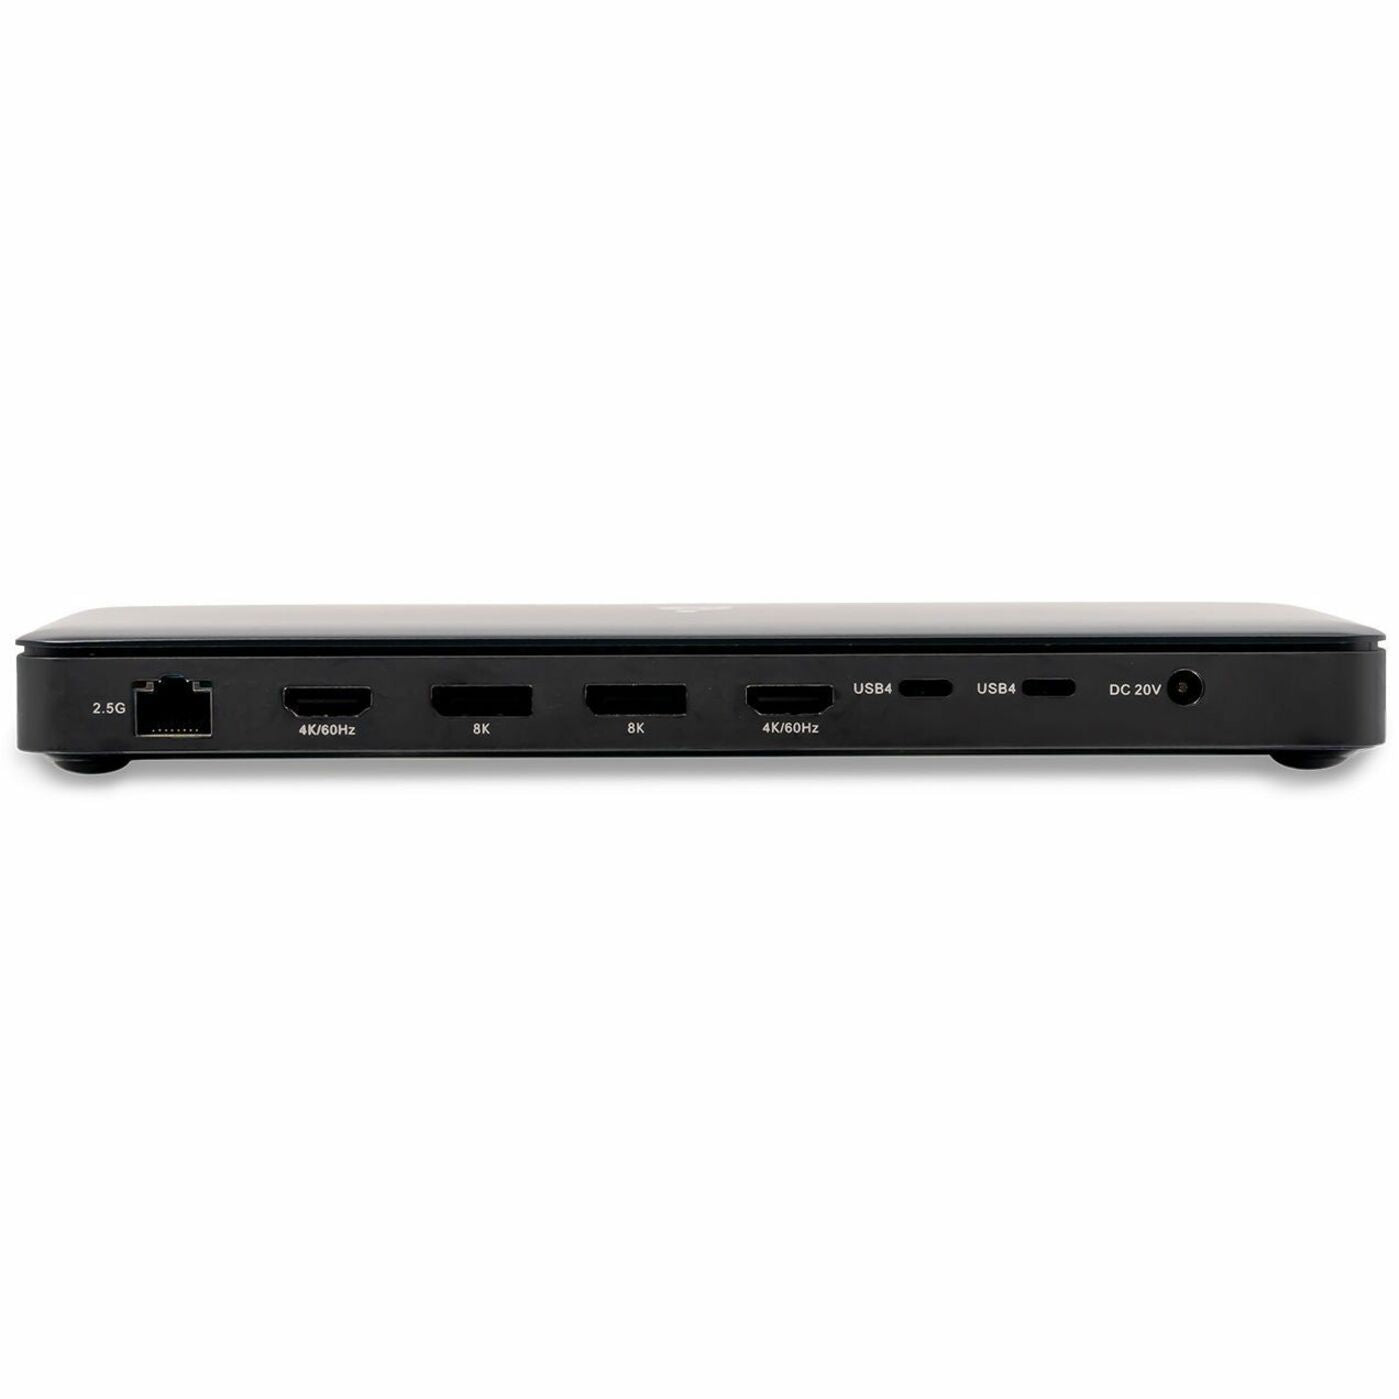 IOGEAR GUD4C8K3 Dock Pro USB4 8K Triple View 6 USB Ports 2 HDMI Ports 2 DisplayPorts 96W Power Delivery